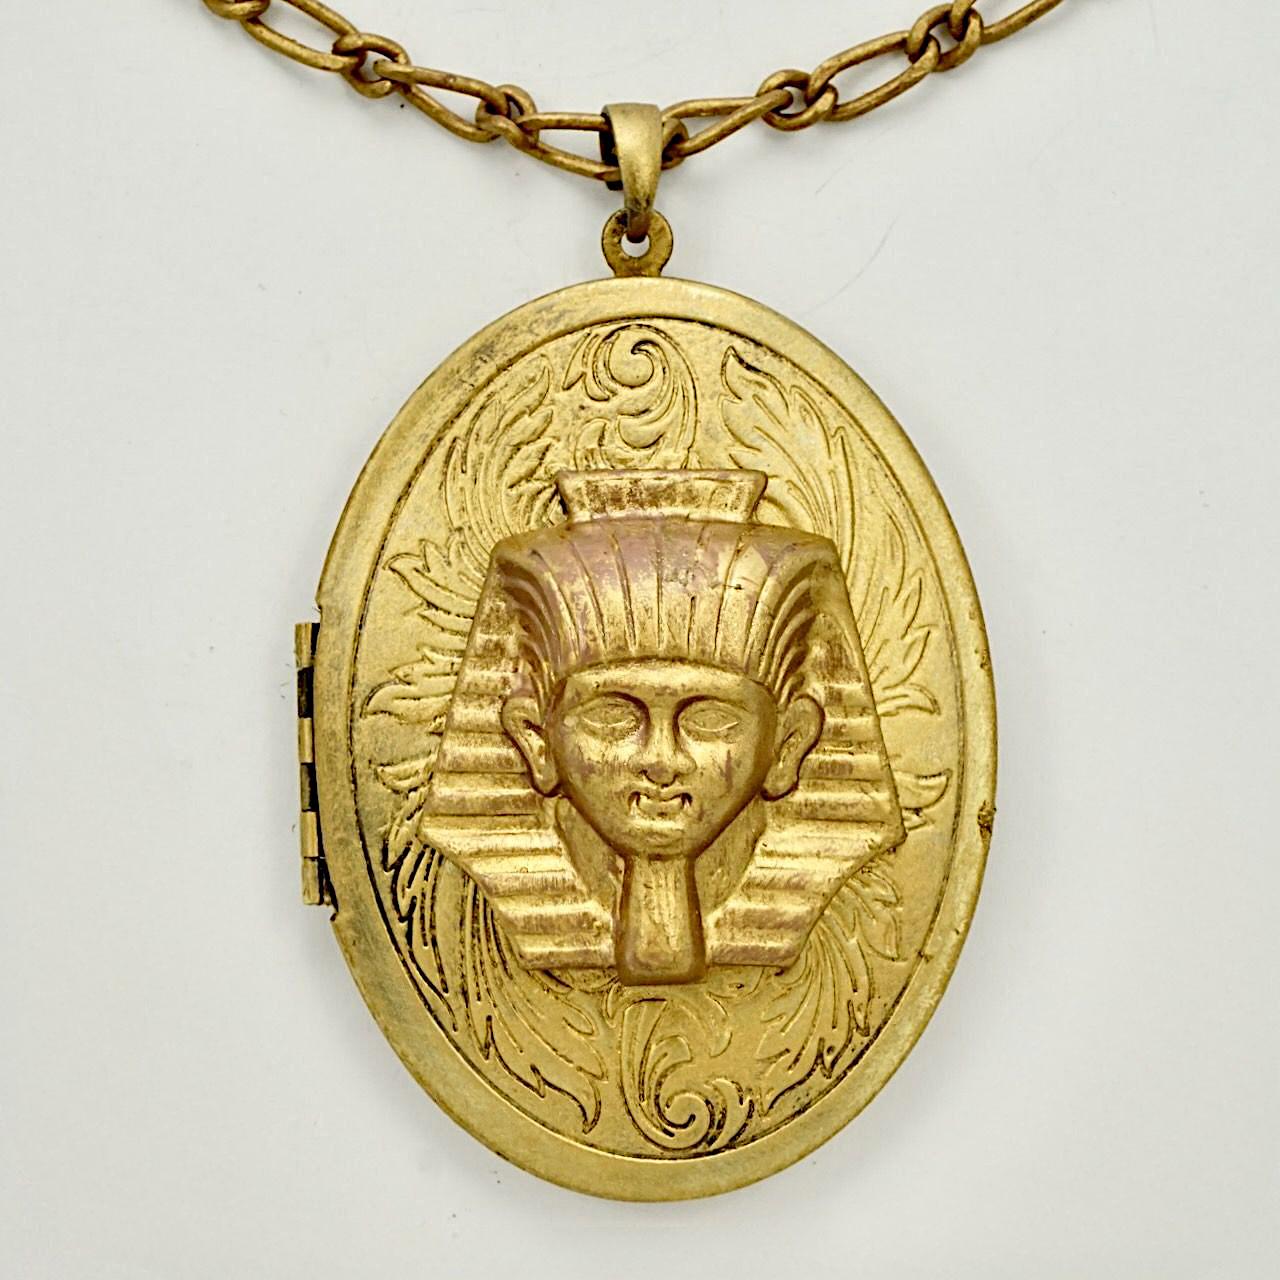 Großes Pharaonenmedaillon aus vergoldetem Metall mit Kette, innen auf einer Seite mit blauer Emaille versehen. Das Medaillon hat eine Länge von 6,4 cm und eine Breite von 4,7 cm. Das Scharnier funktioniert gut, und das Medaillon lässt sich gut